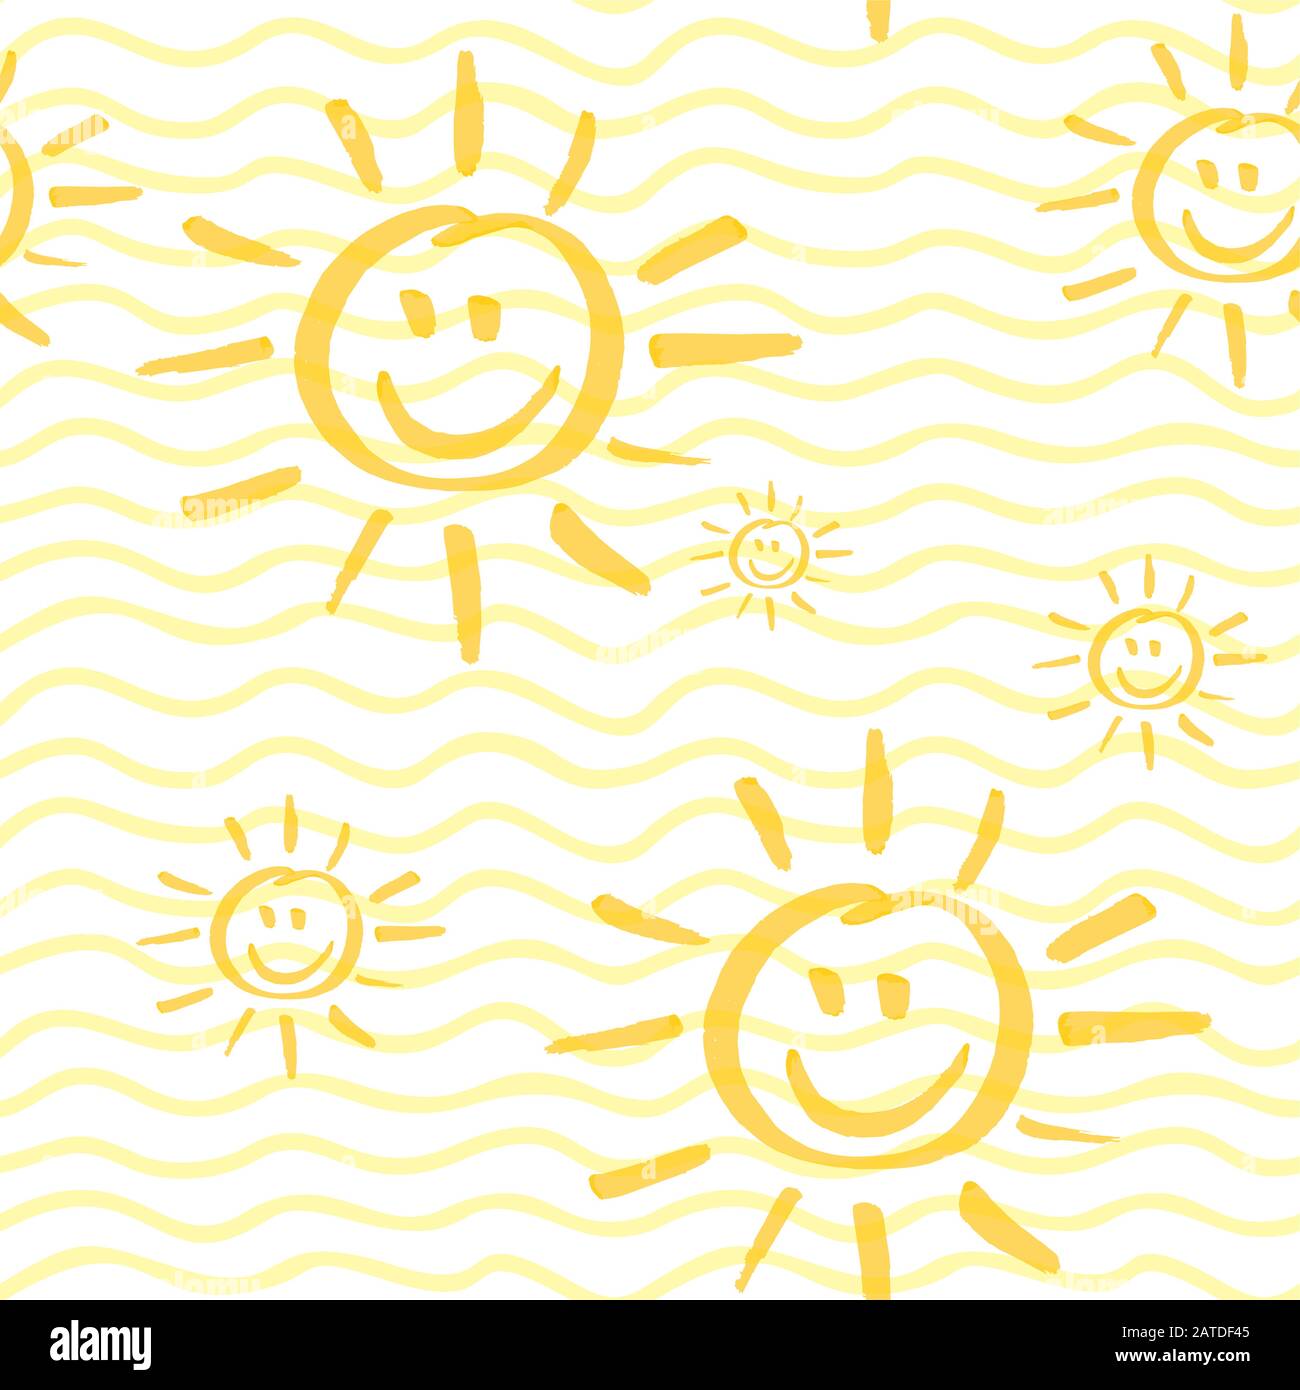 Nahtloses Muster mit lächelnder Sonnenhand, gezeichnet von Marker. Sonnenschein wiederholt Textur in gelben Farben. Cartoon-Hintergrund für Kinder für Drucke, Textil, Wal Stock Vektor